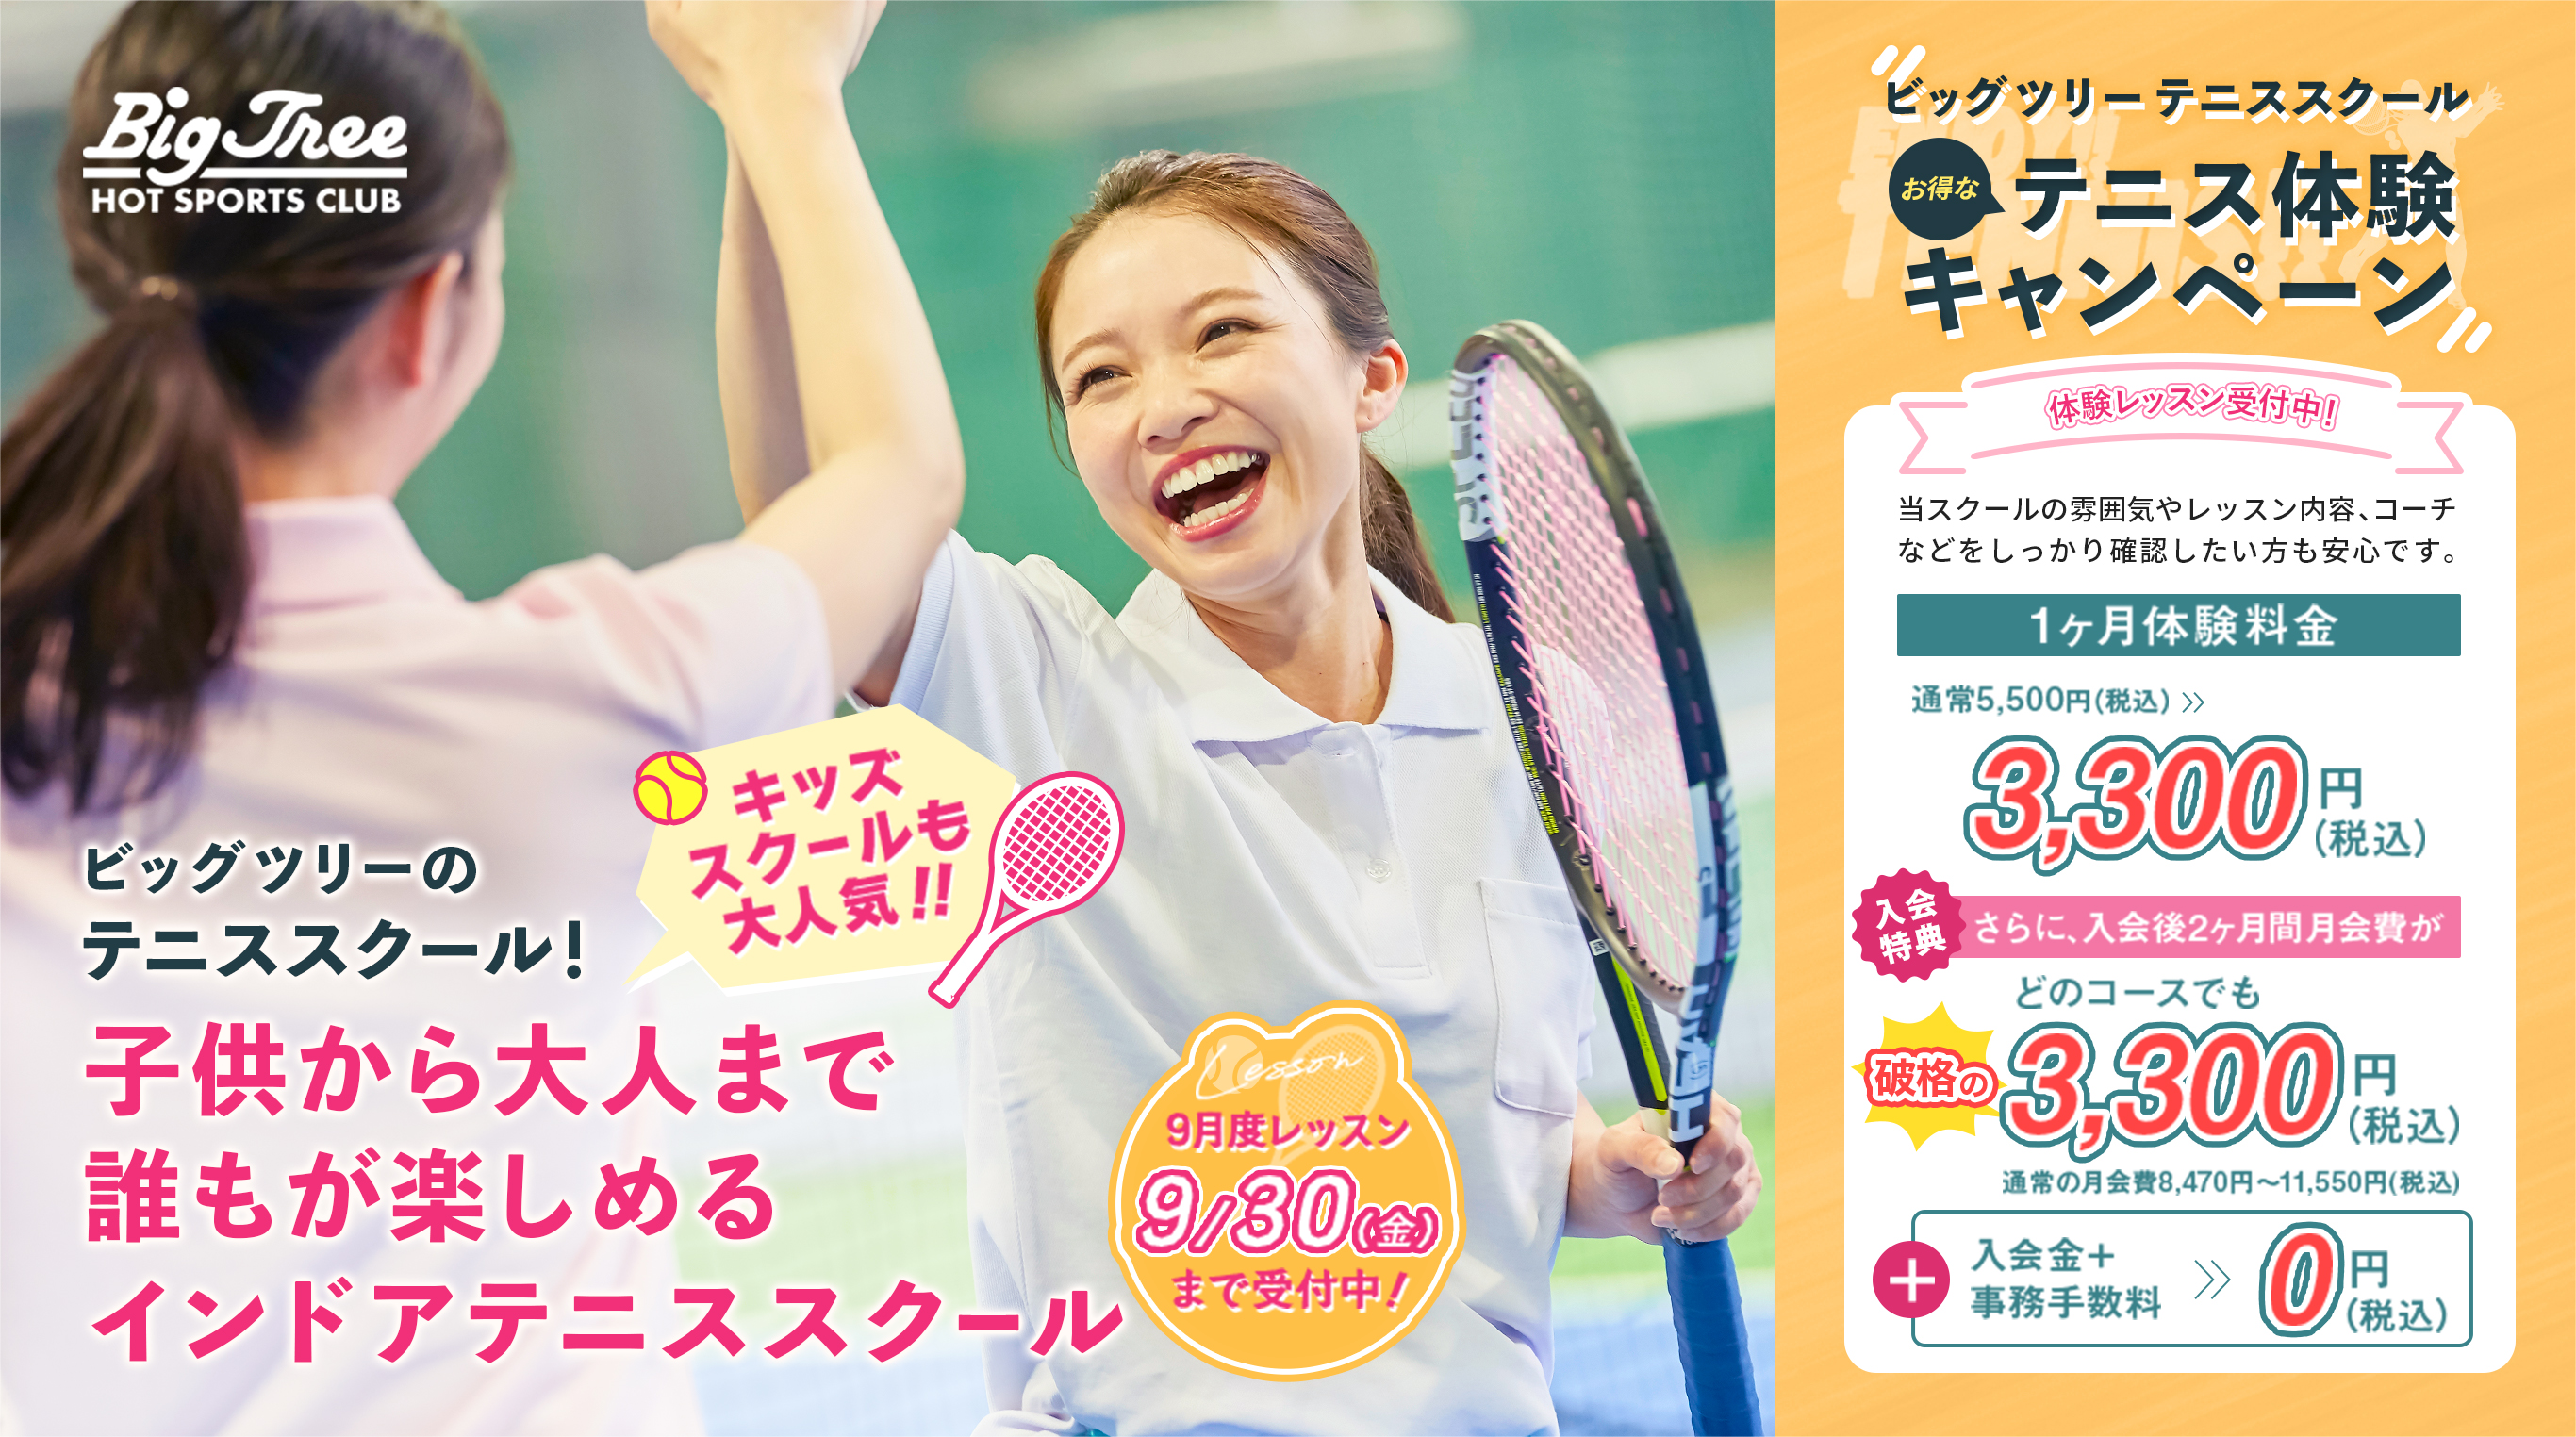 ビッグツリー・テニススクール お得なテニス体験キャンペーン